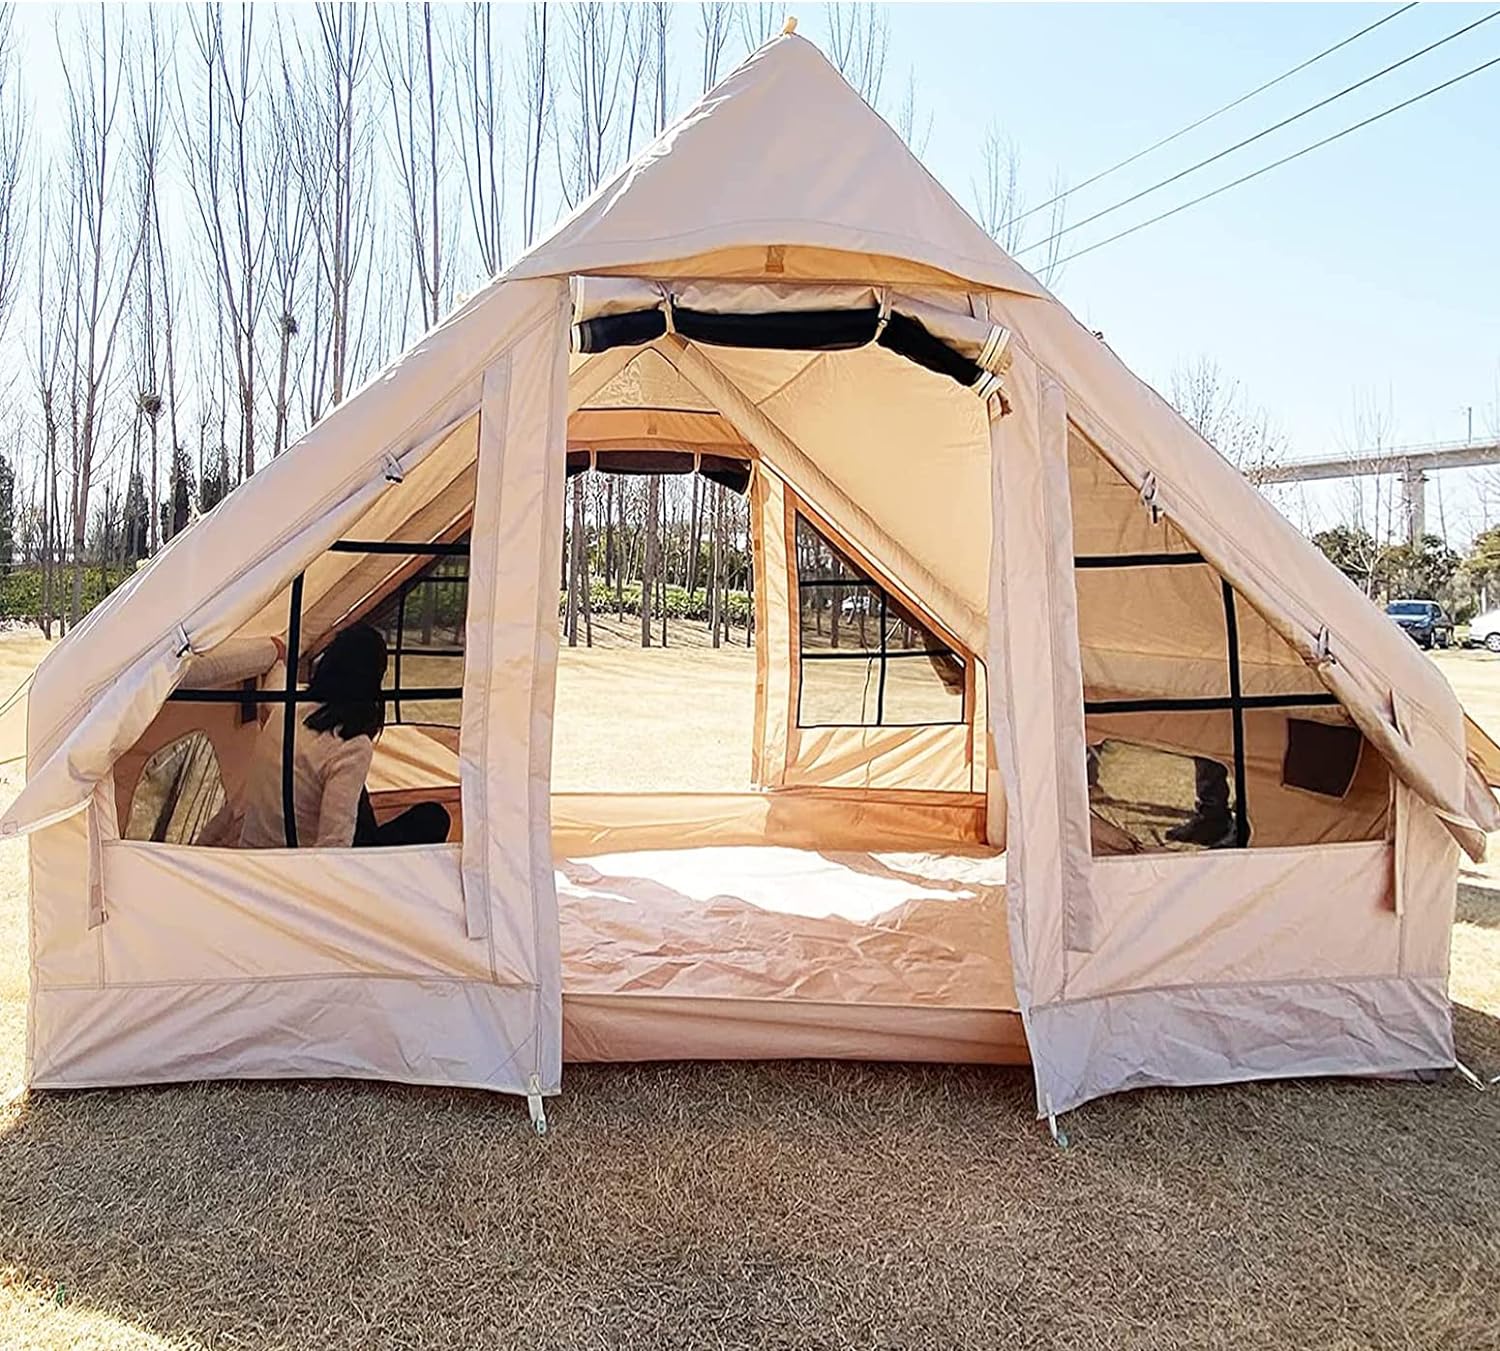 Lire la suite à propos de l’article Quelle est la meilleure marque de tente de camping ?